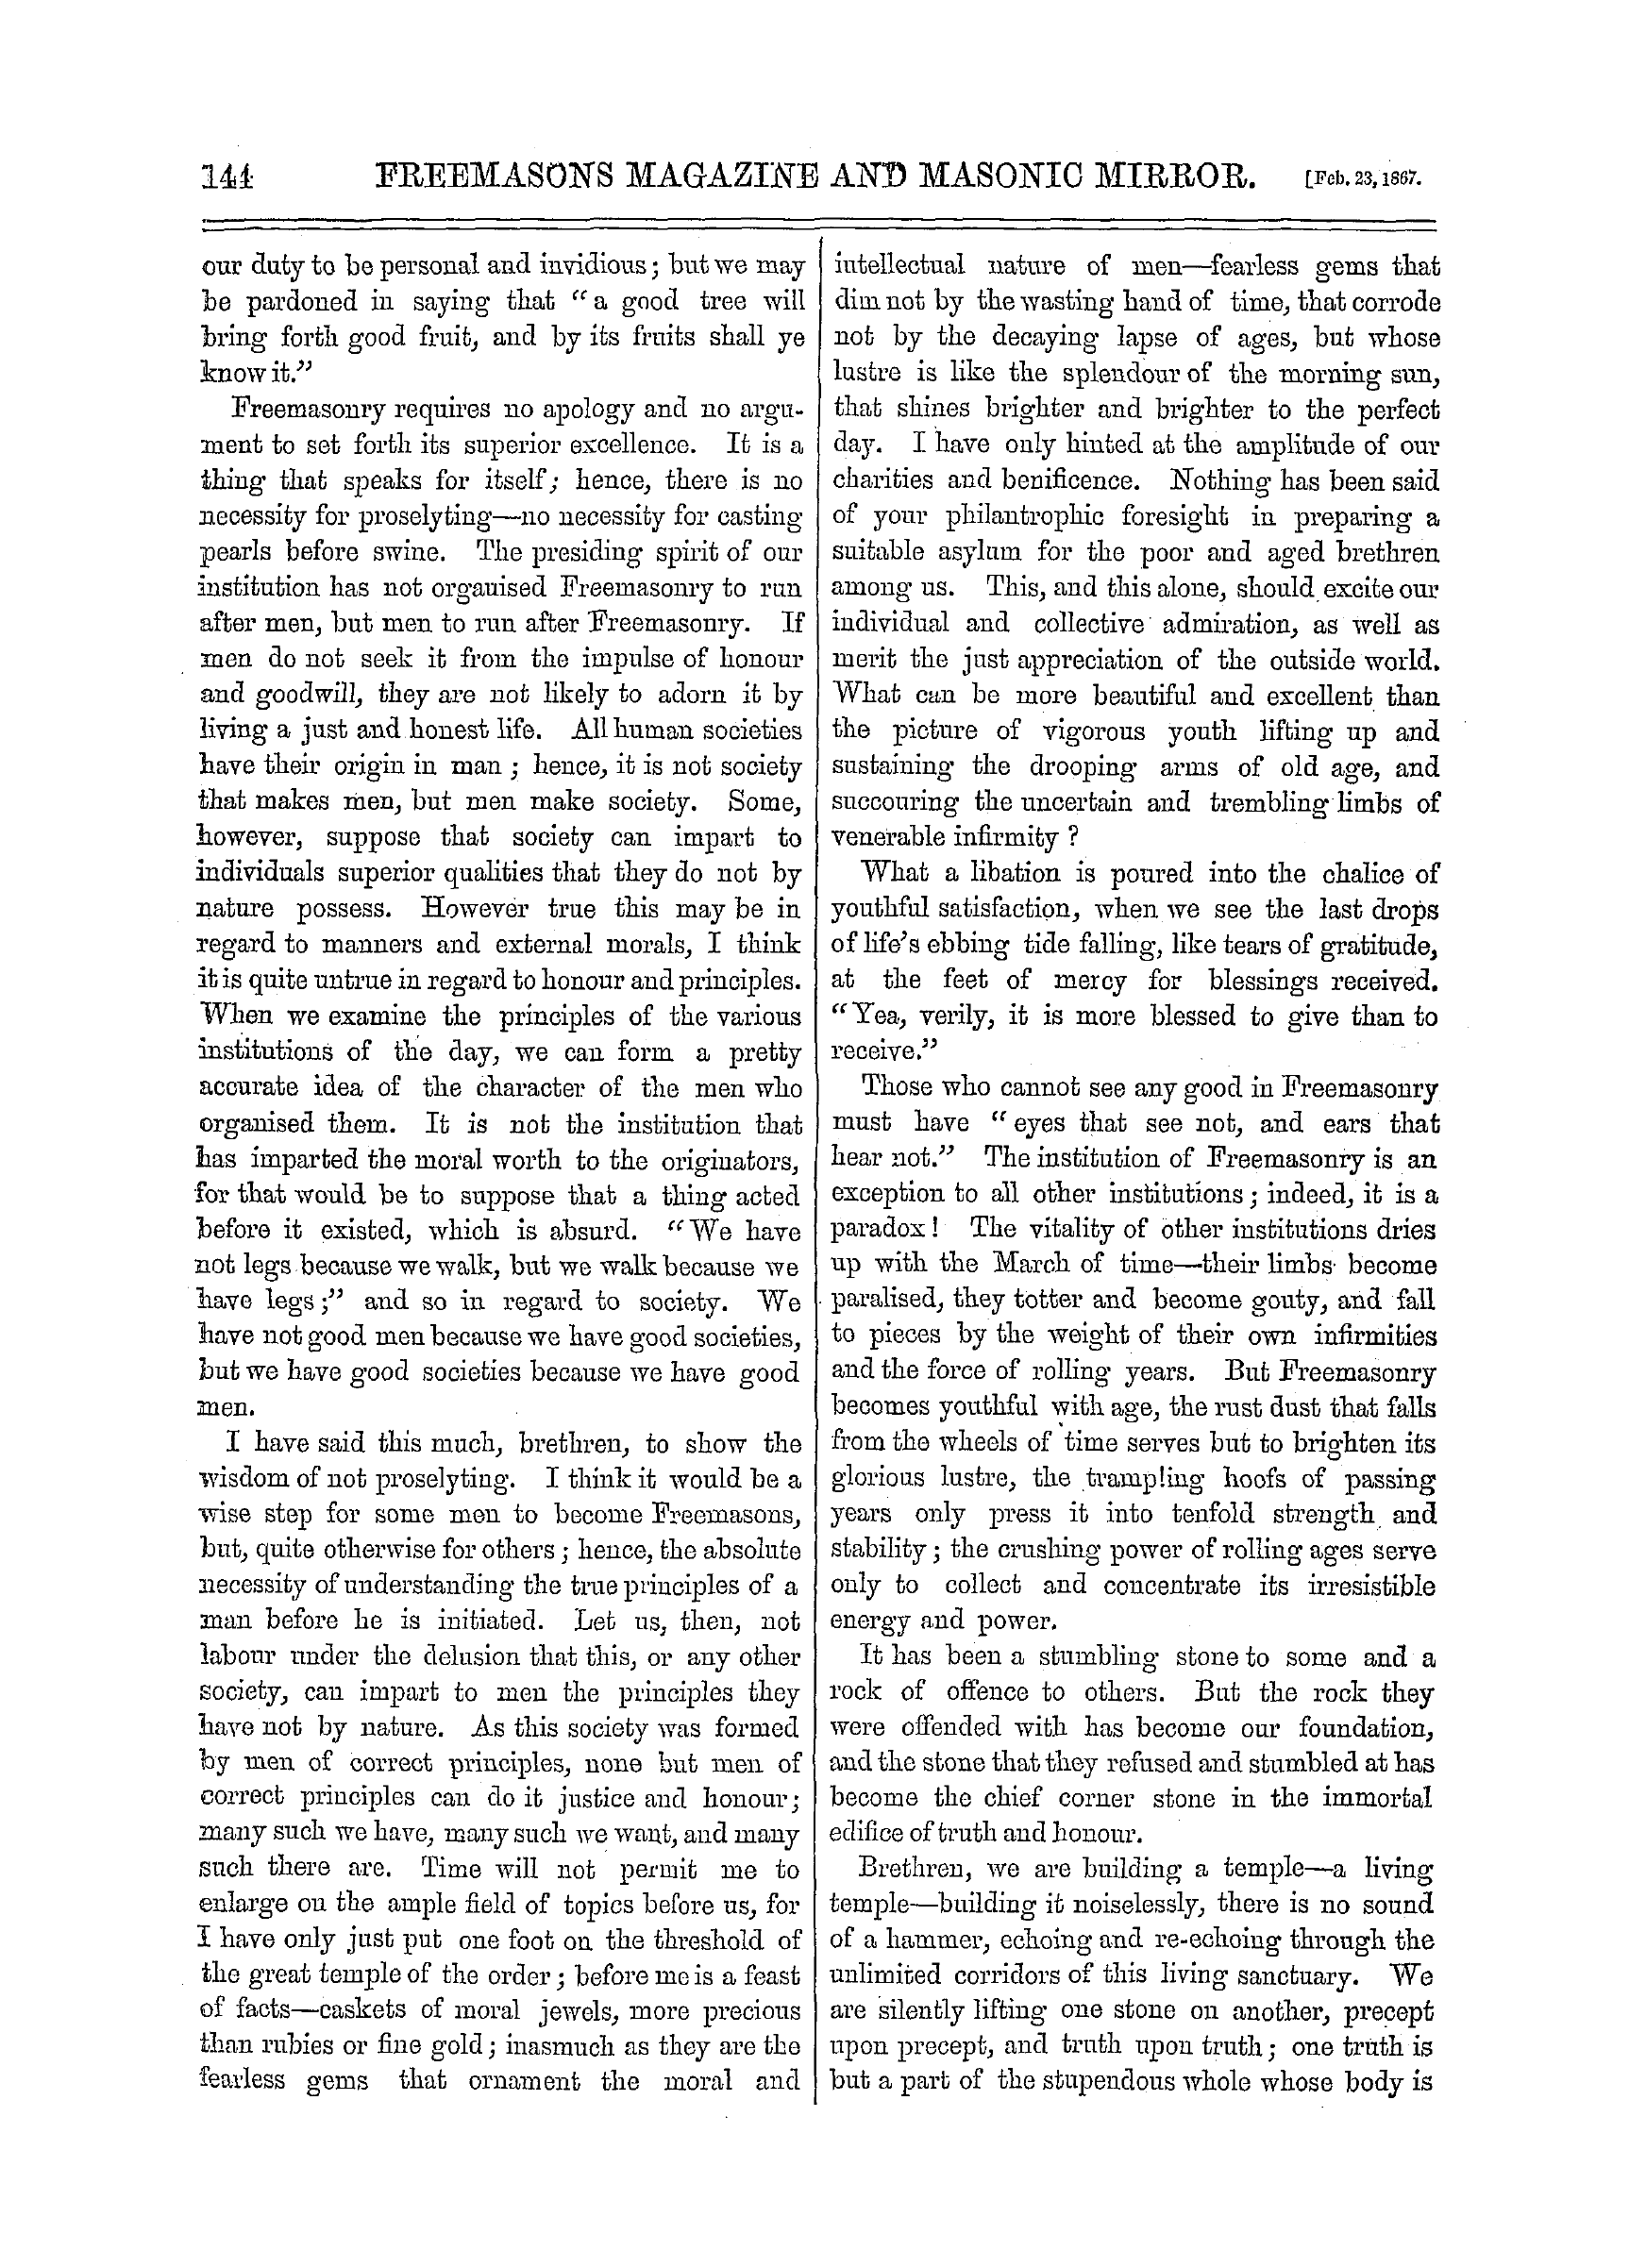 The Freemasons' Monthly Magazine: 1867-02-23: 4